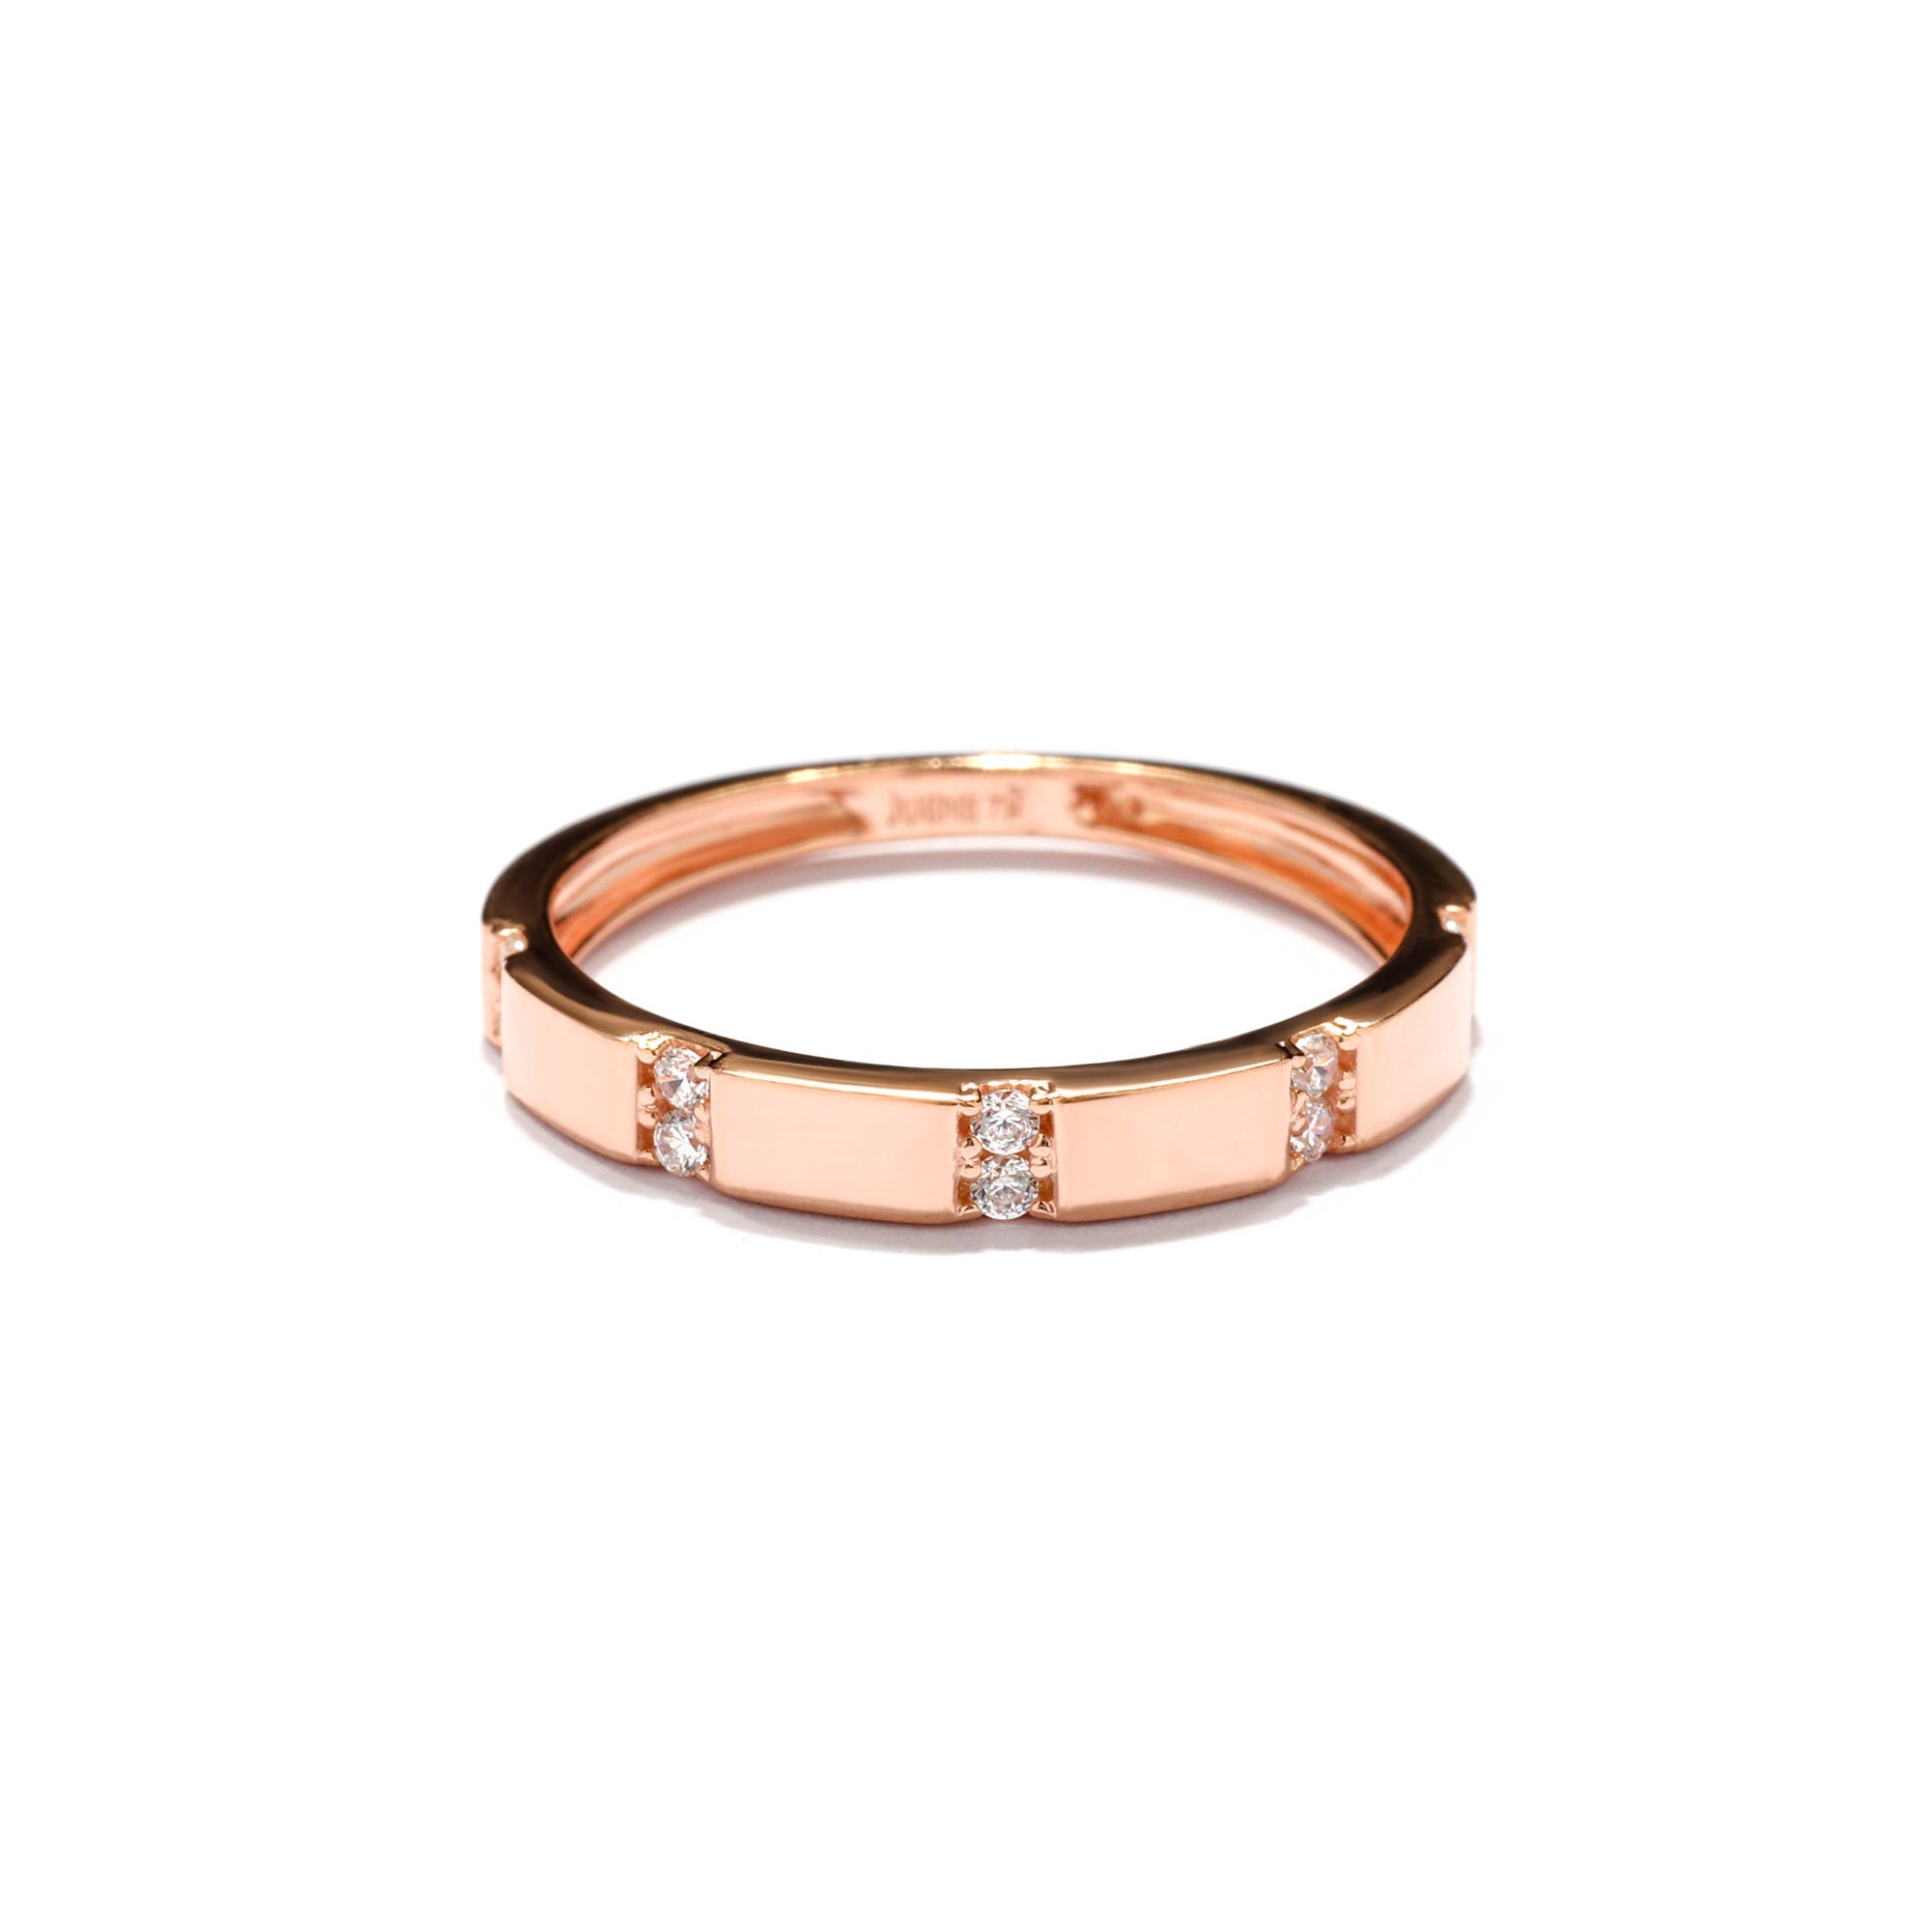 Zeline rings 05 - Juene Jewelry